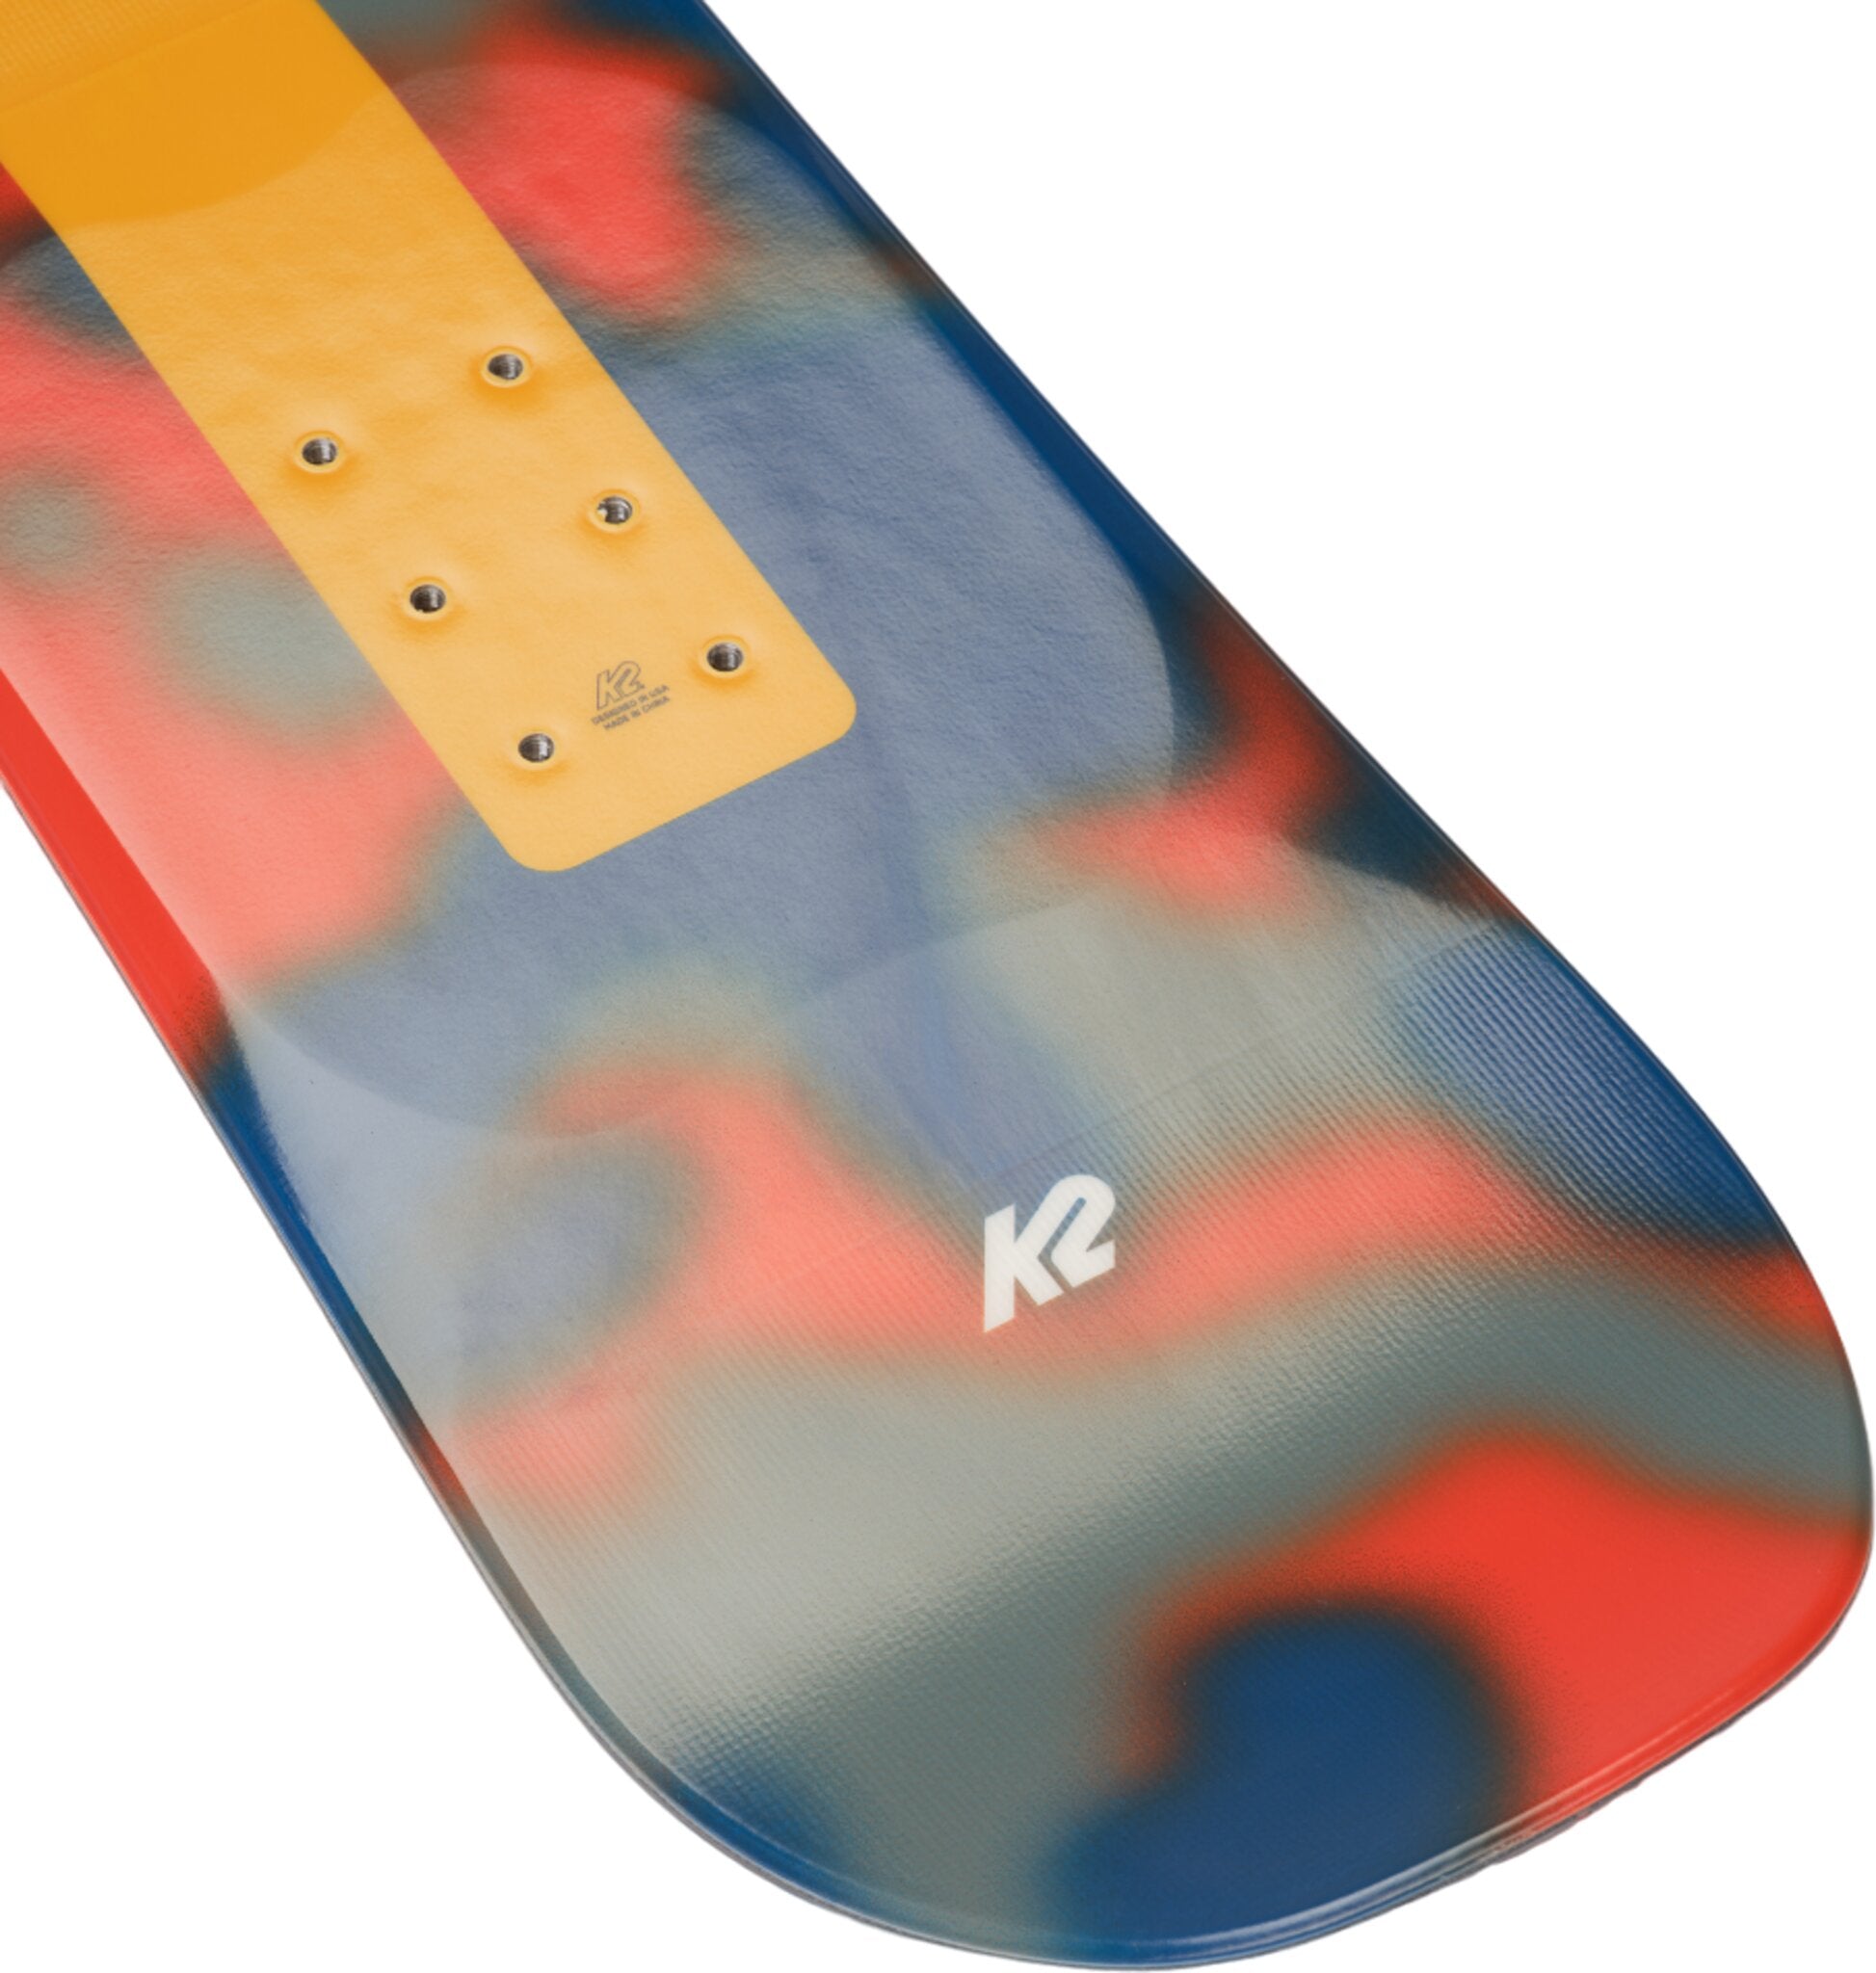 Premières glisses avec le Burton Riglet, snowboard adapté aux enfants -  TRIP AND TWINS